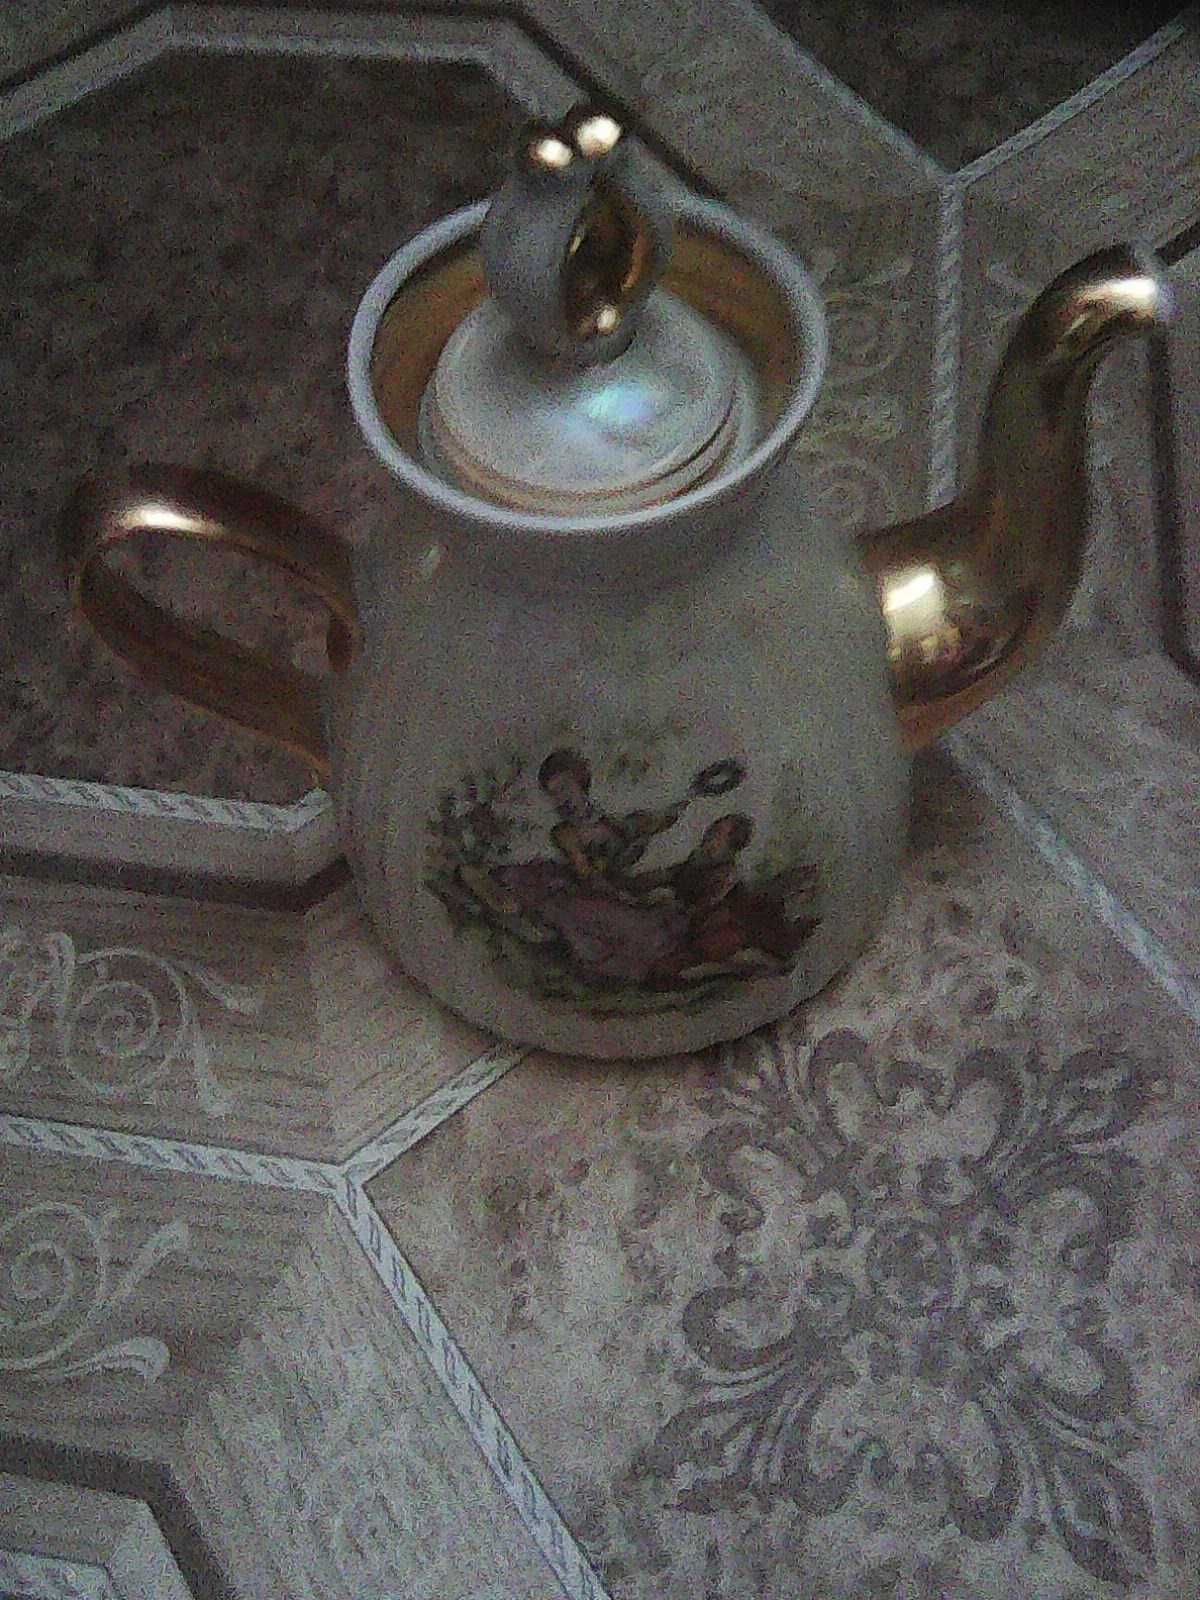 Чайник фарфоровый с позолотой от сервиза Мадонна (СССР)